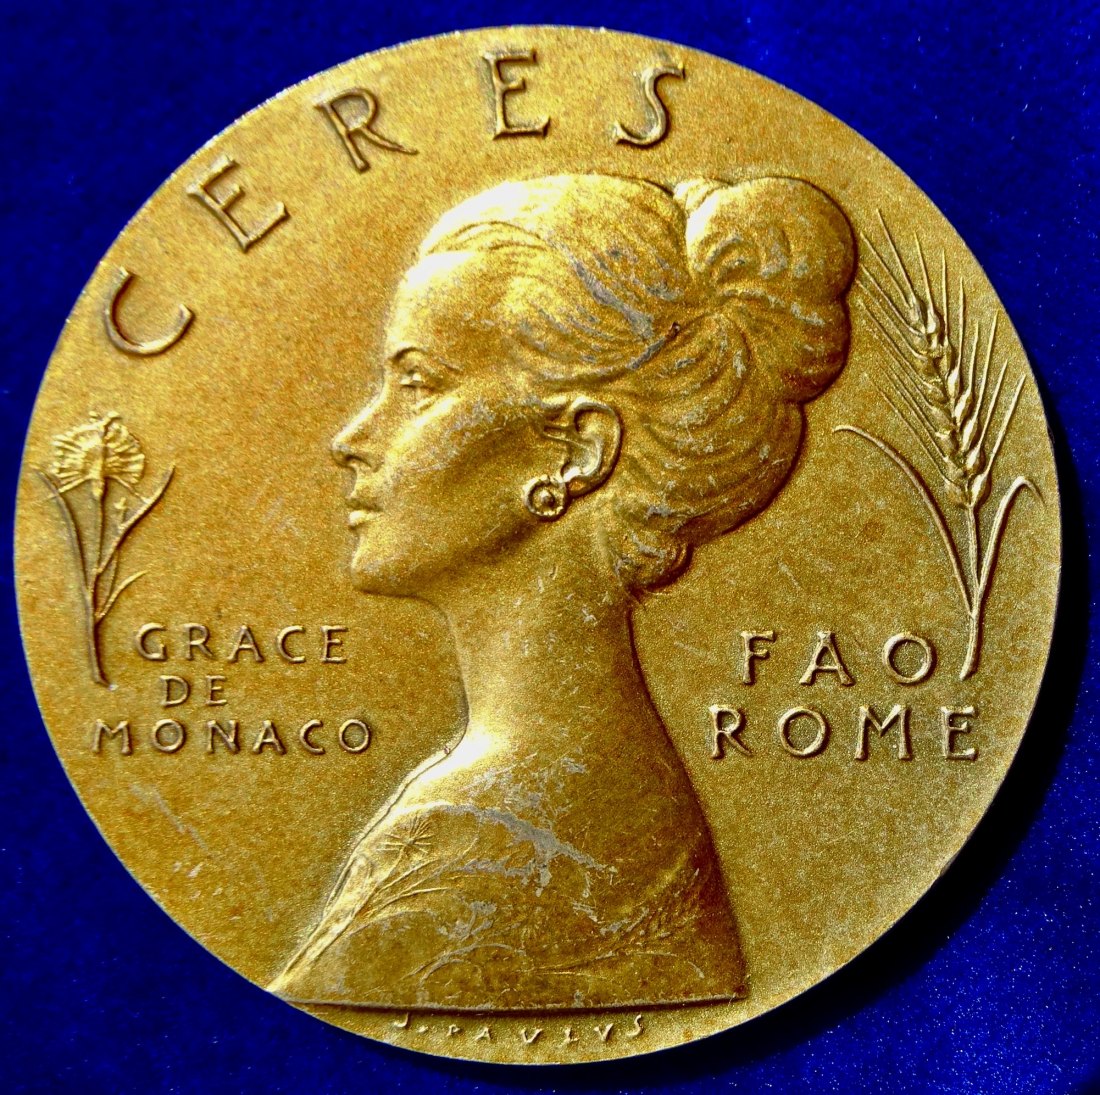  Monaco Silbermedaille 1976 o.J. Grace Kelly Ceres FAO Rom, Italien   